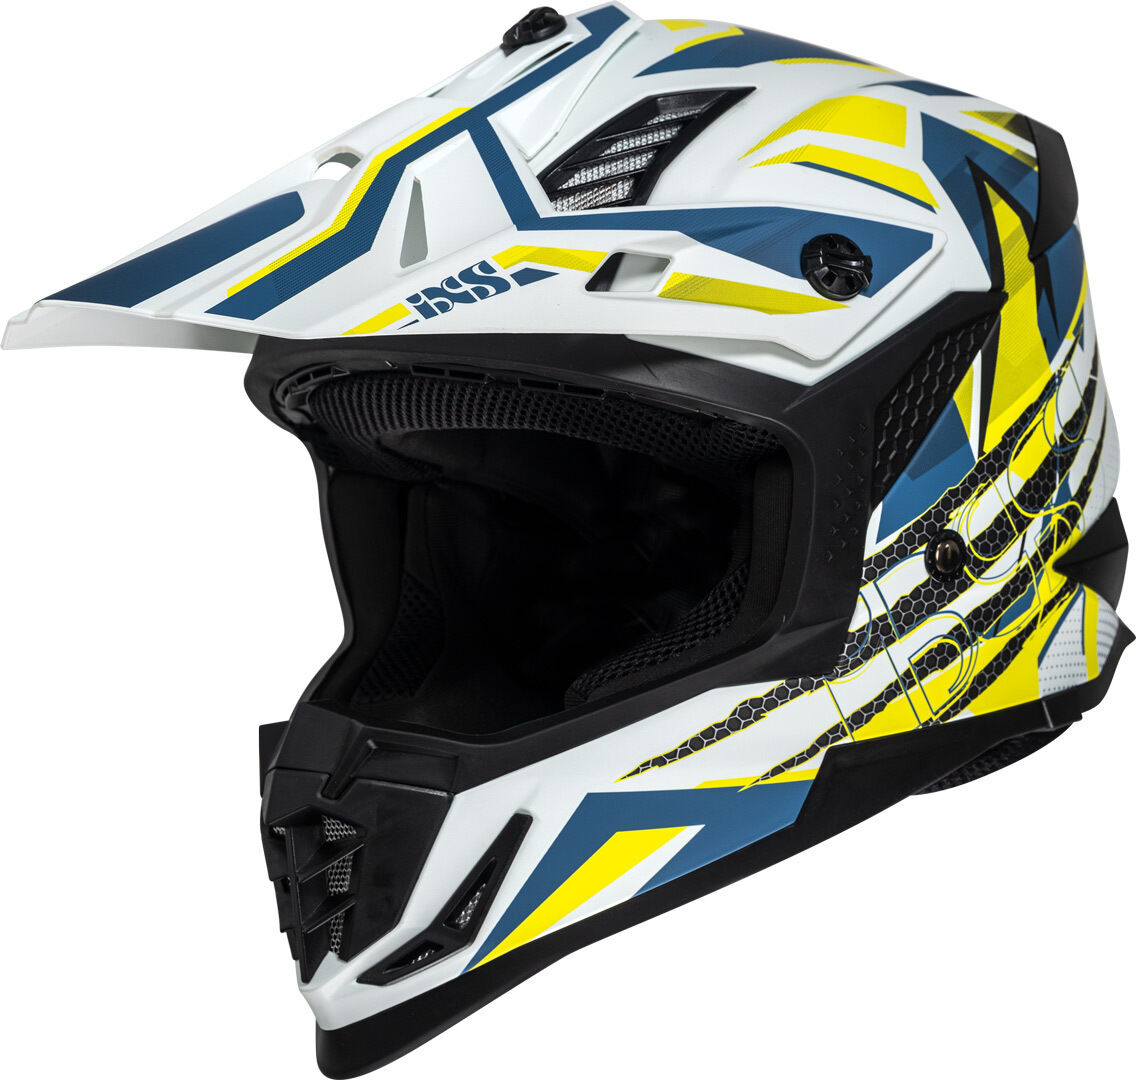 IXS 363 2.0 Casco de motocross - Blanco Azul Amarillo (XL)